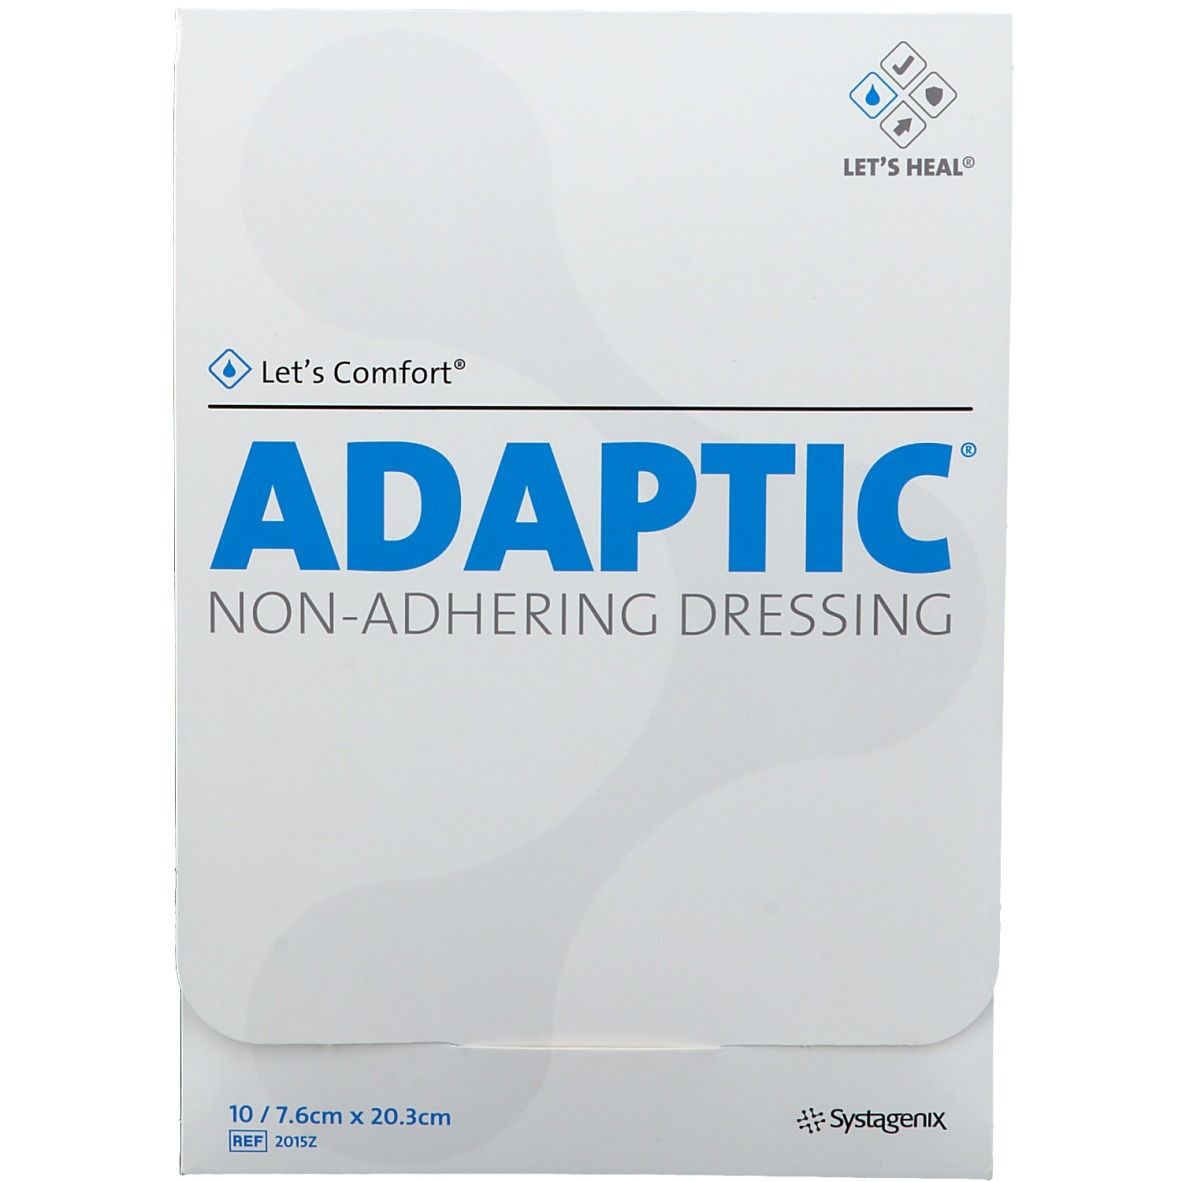 ADAPTIC® Nichthaftender Wundverband 7,6 x 20,3 cm